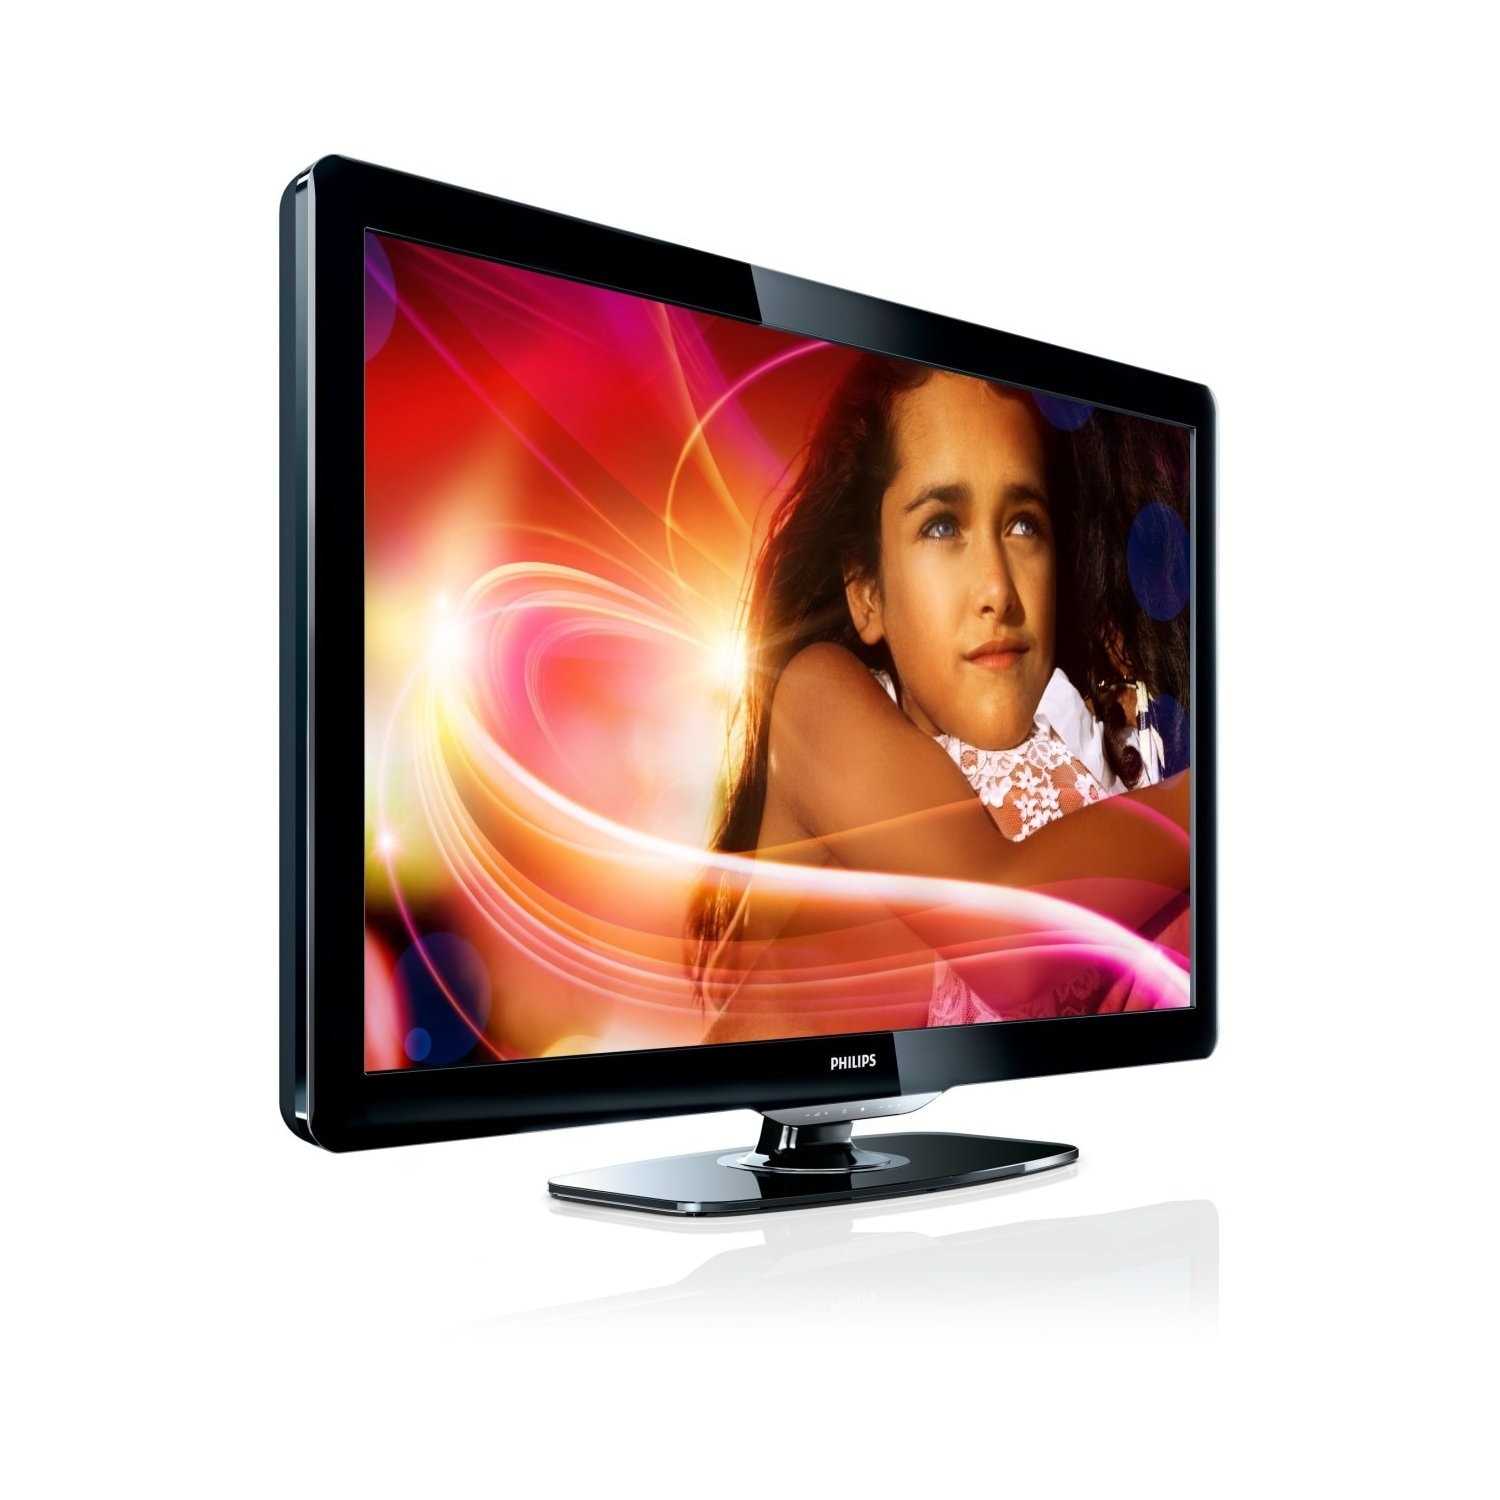 Philips 19pfl2908h (черный) - купить , скидки, цена, отзывы, обзор, характеристики - телевизоры